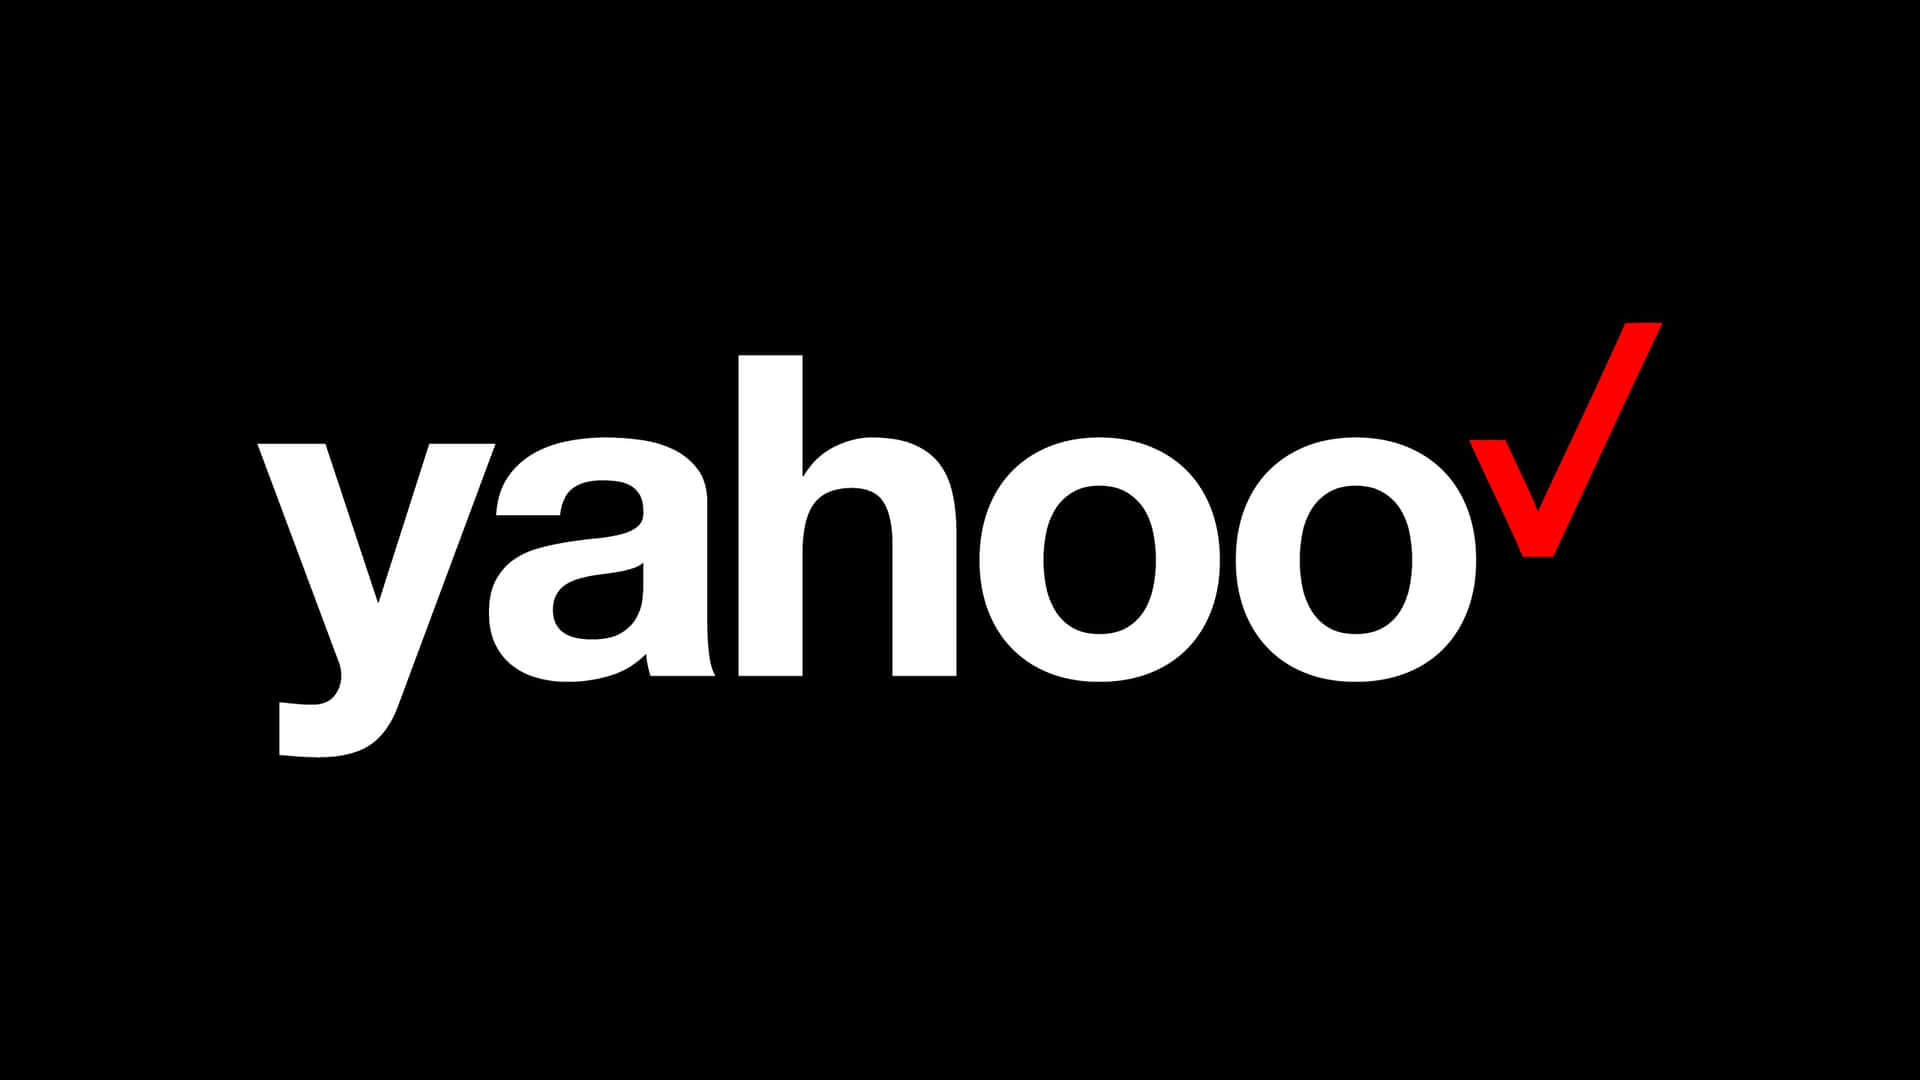 Yahoodesktop-hintergrund